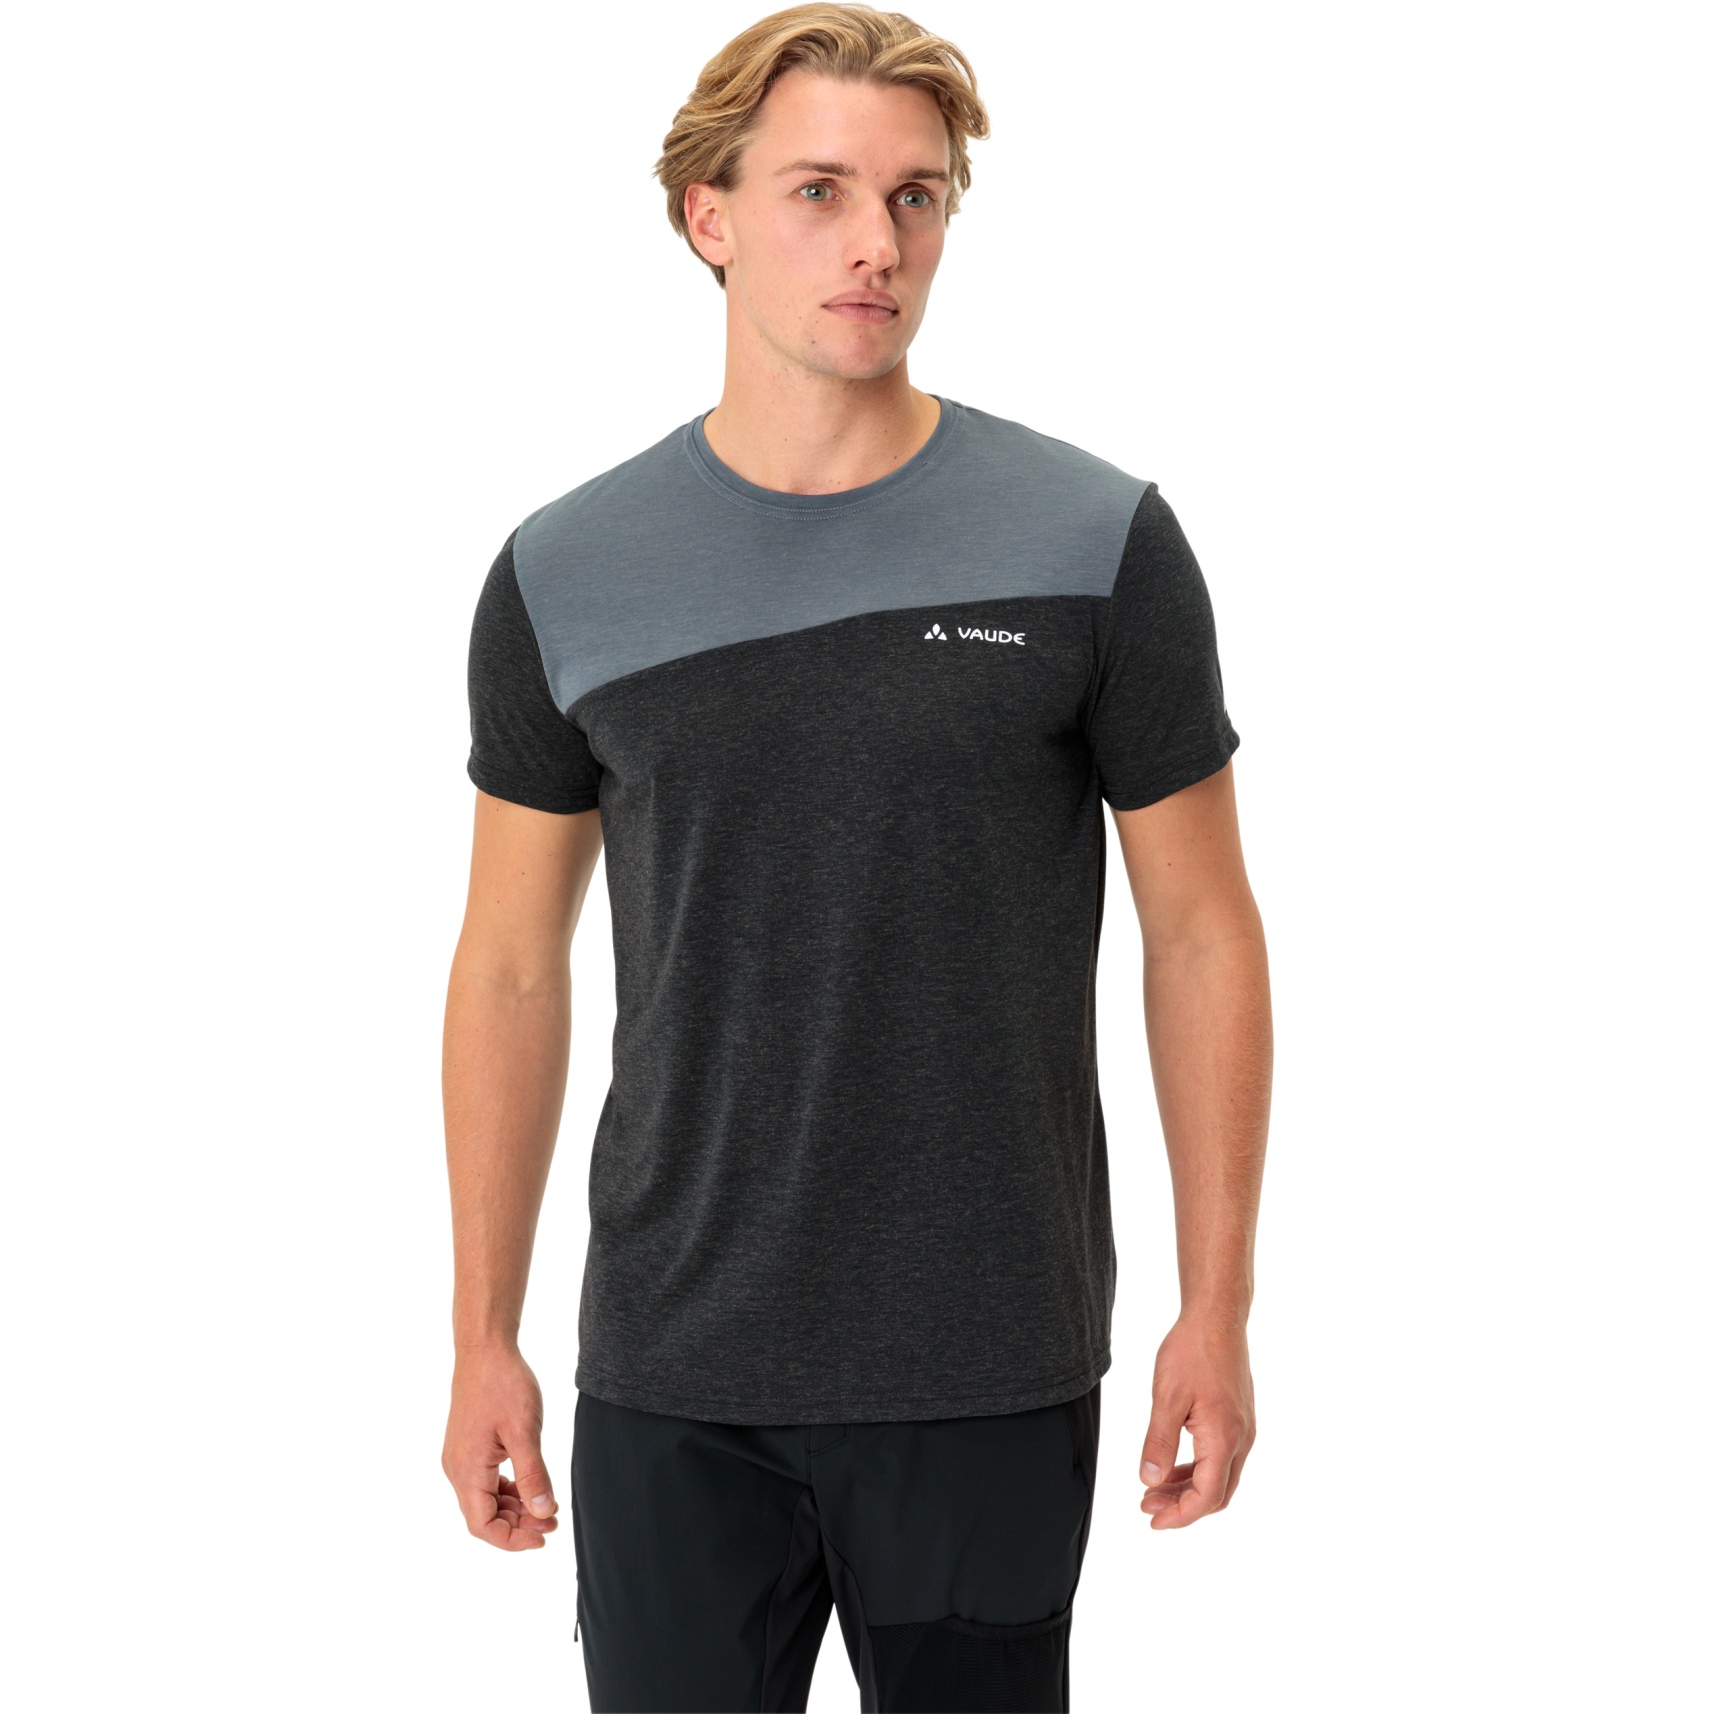 Produktbild von Vaude Sveit Shirt Herren - schwarz/weiß